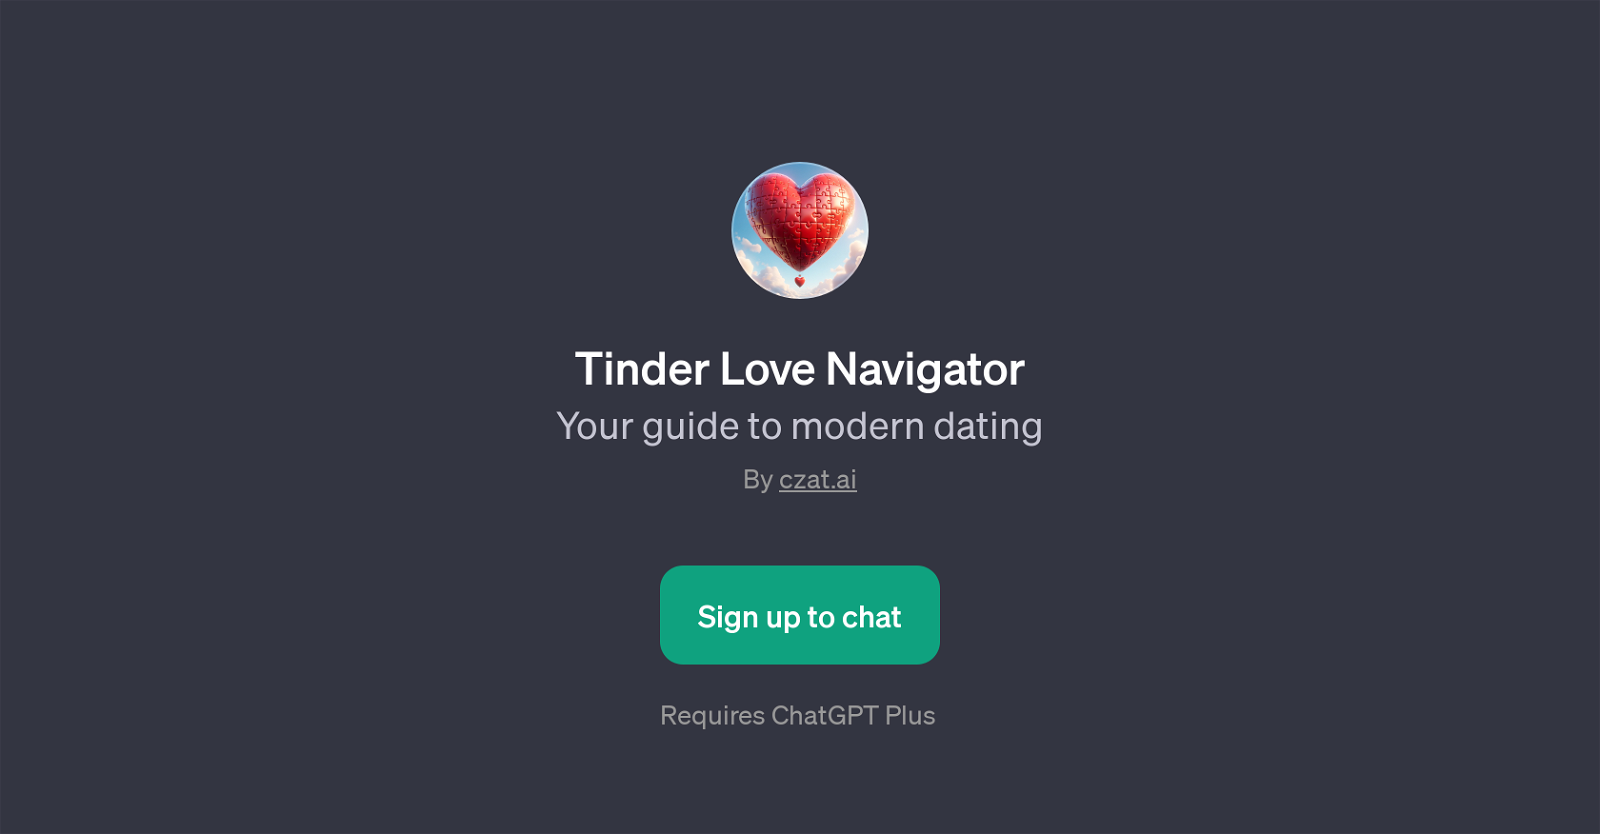 Tinder Love Navigator website